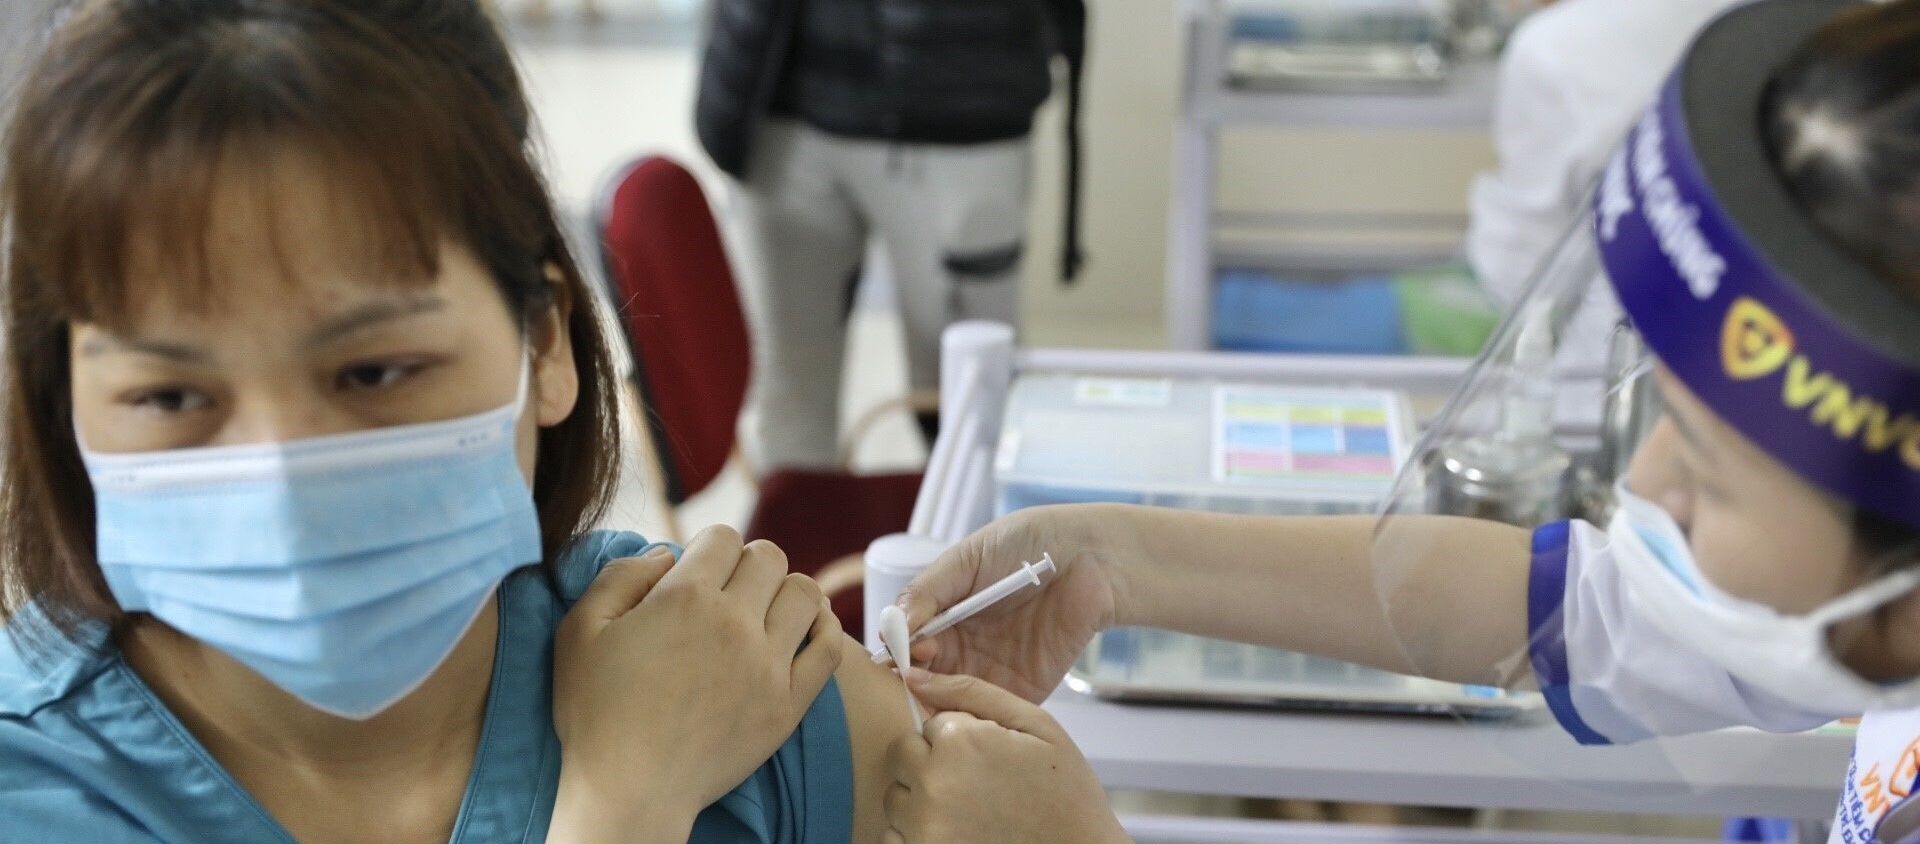 Nhân viên y tế tham gia trực tiếp công tác phòng chống dịch COVID-19 tại Bệnh viện Thanh Nhàn được tiêm vaccine phòng COVID-19.  - Sputnik Việt Nam, 1920, 15.03.2021